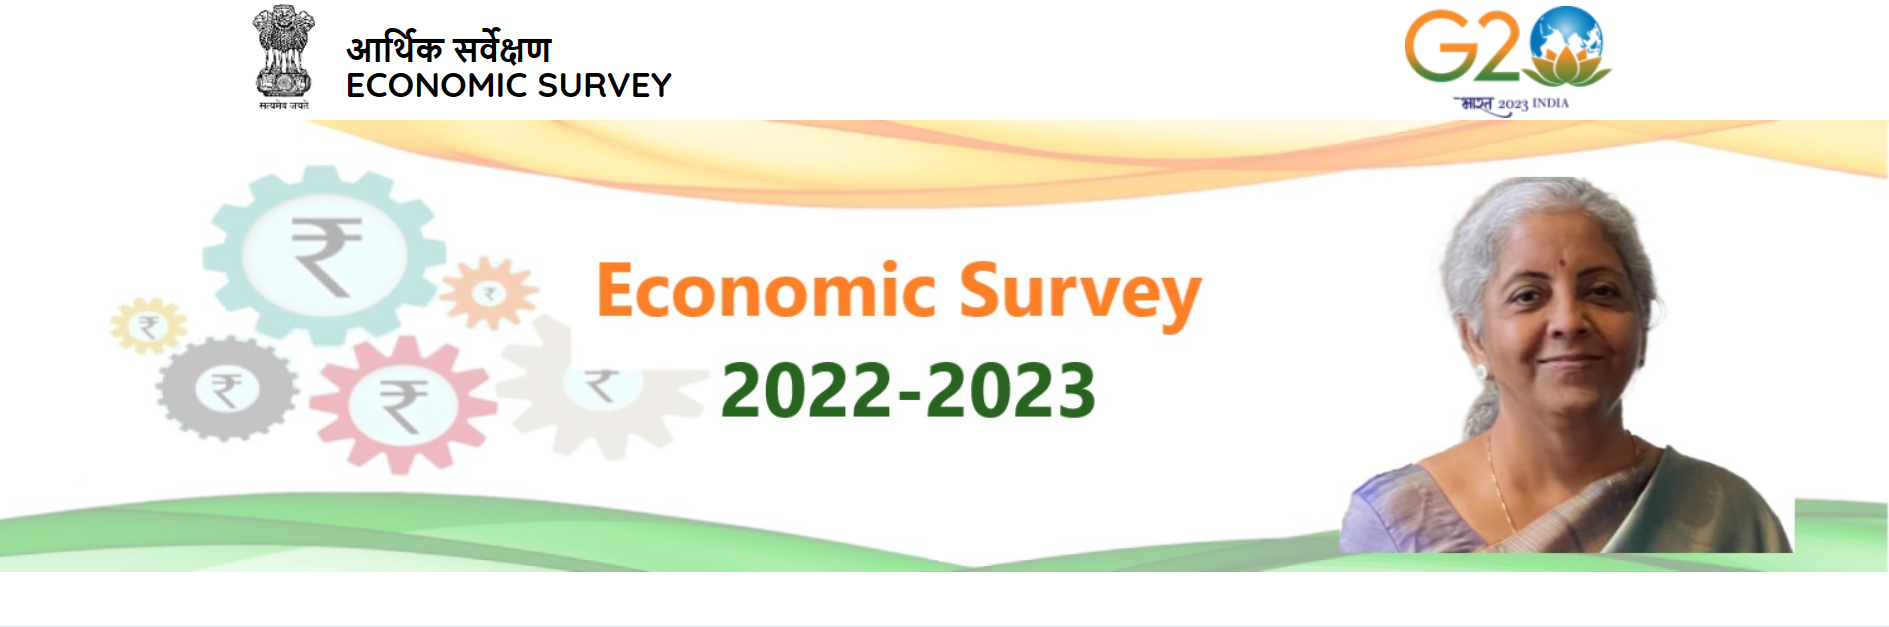 वित्त मंत्री निर्मला सीतारमण ने बजट सत्र के दौरान पेश किया आर्थिक सर्वेक्षण, 2023-24 के लिए जीडीपी ग्रोथ रेट 6.5% रहने का अनुमान